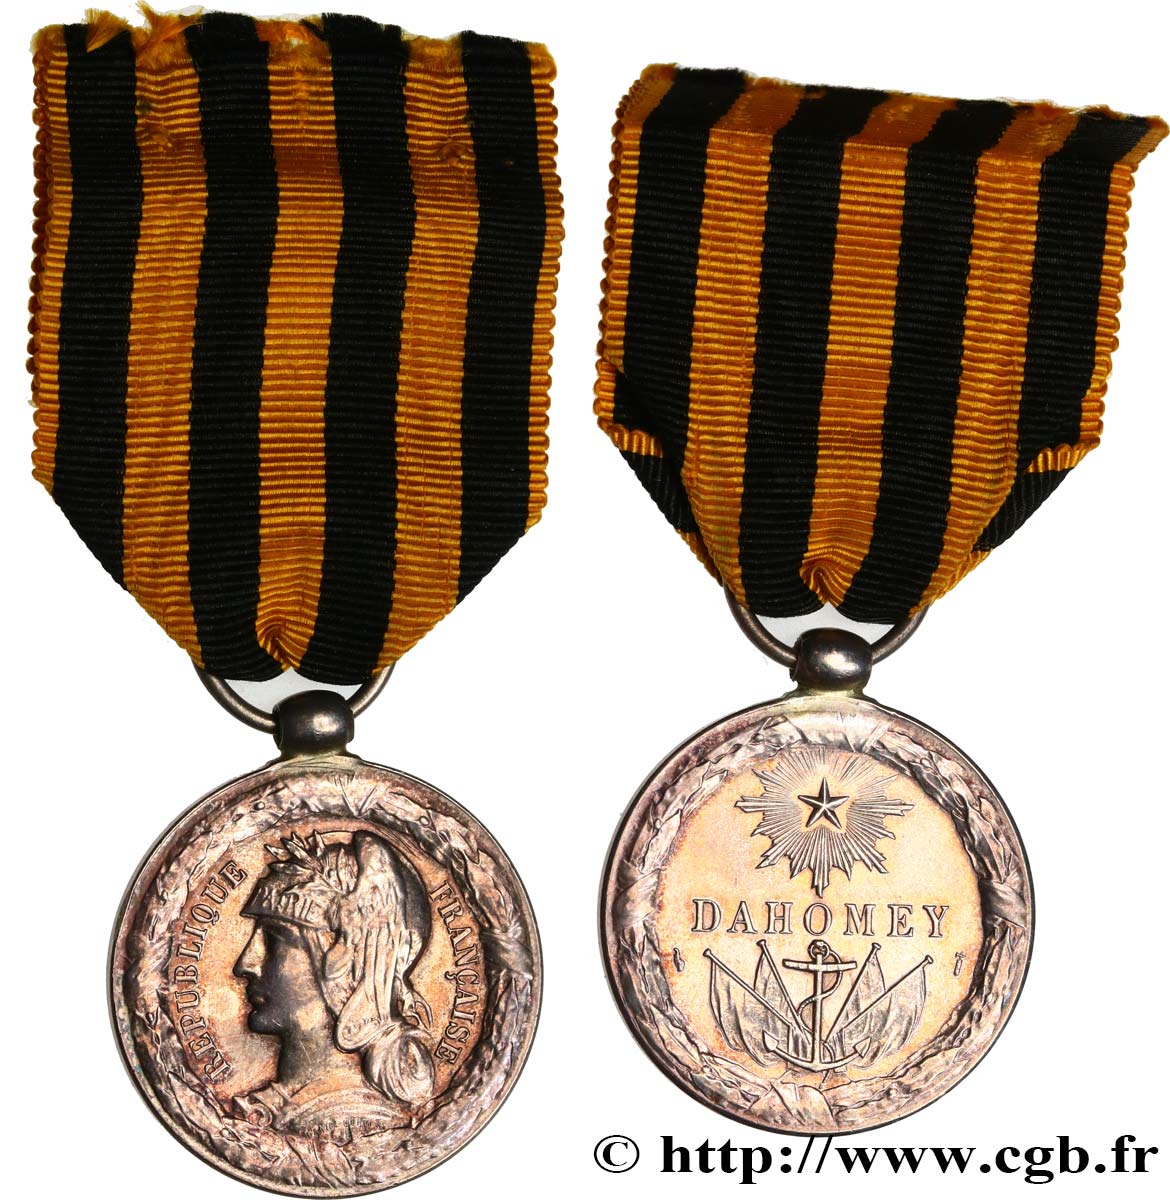 III REPUBLIC Médaille commémorative, expédition du Dahomey AU